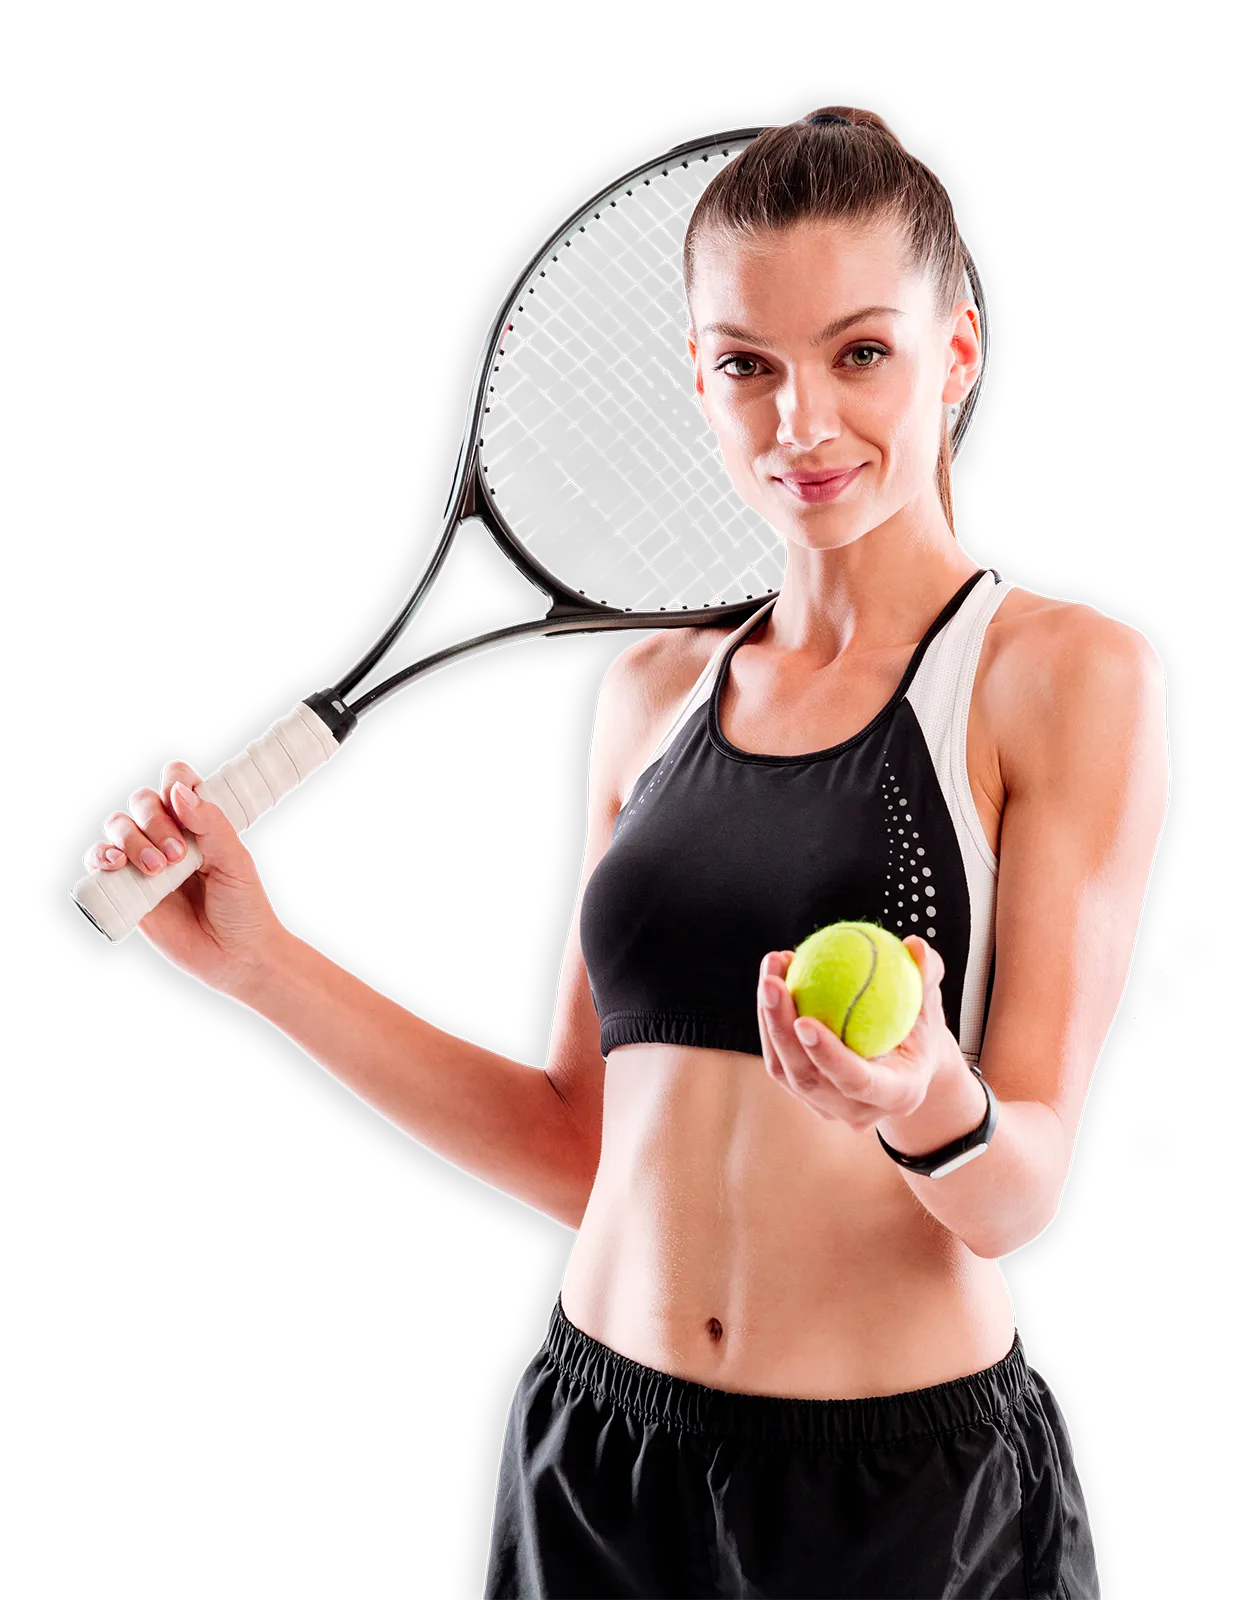 Una giovane tennista sorridente guarda di fornte a sé, con una mano tiene una pallina da tennis e col l'altra regge una racchetta che ha poggiata in spalla.